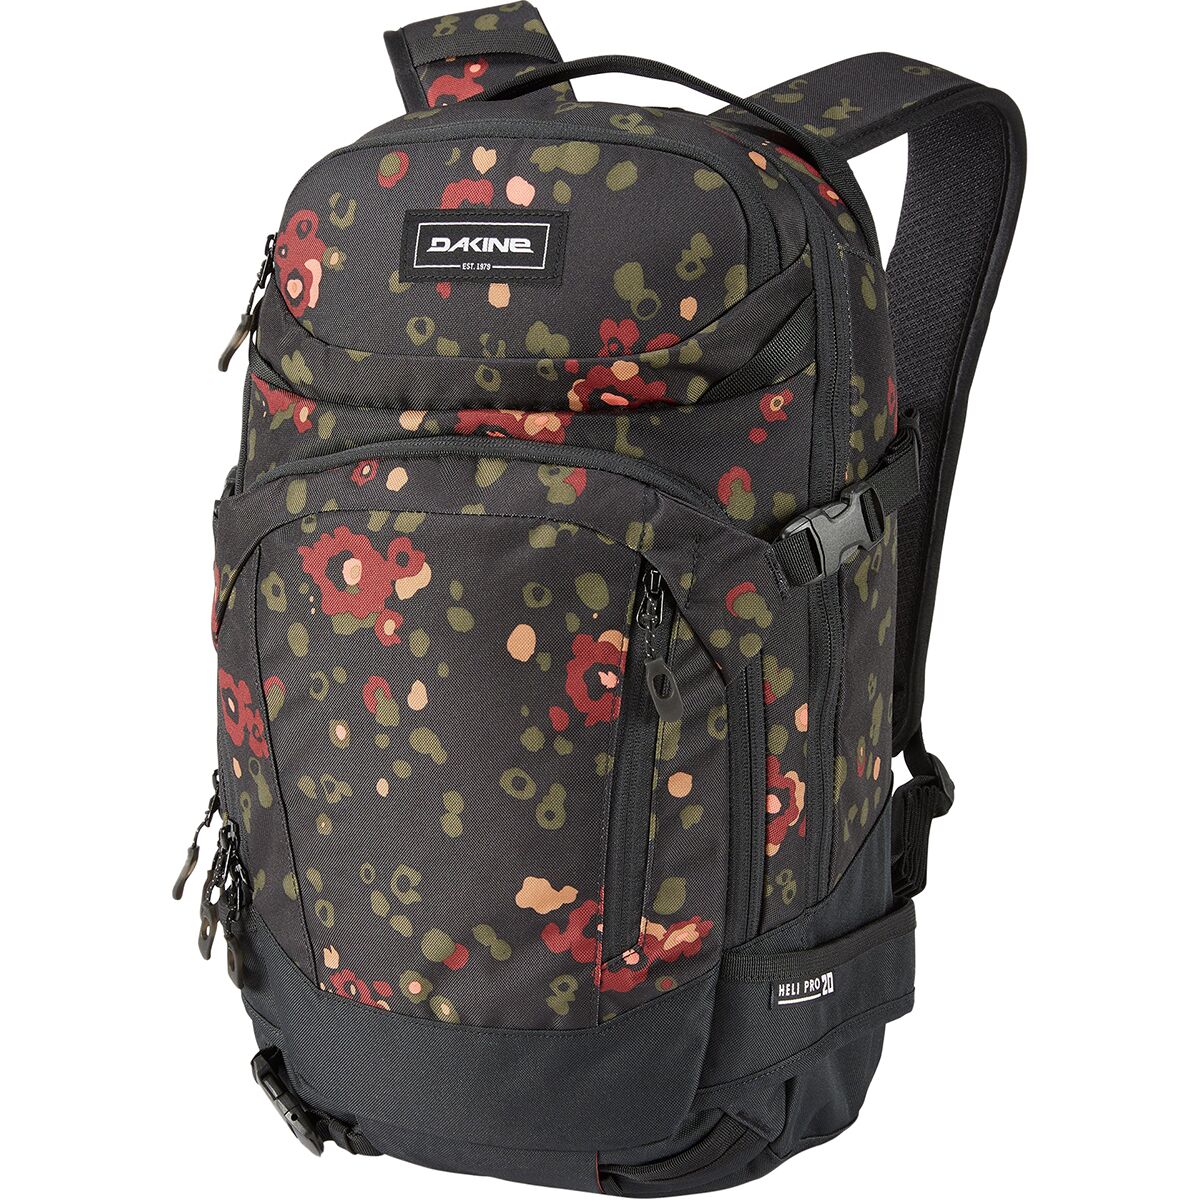 Heli Pro 20L Backpack - Women